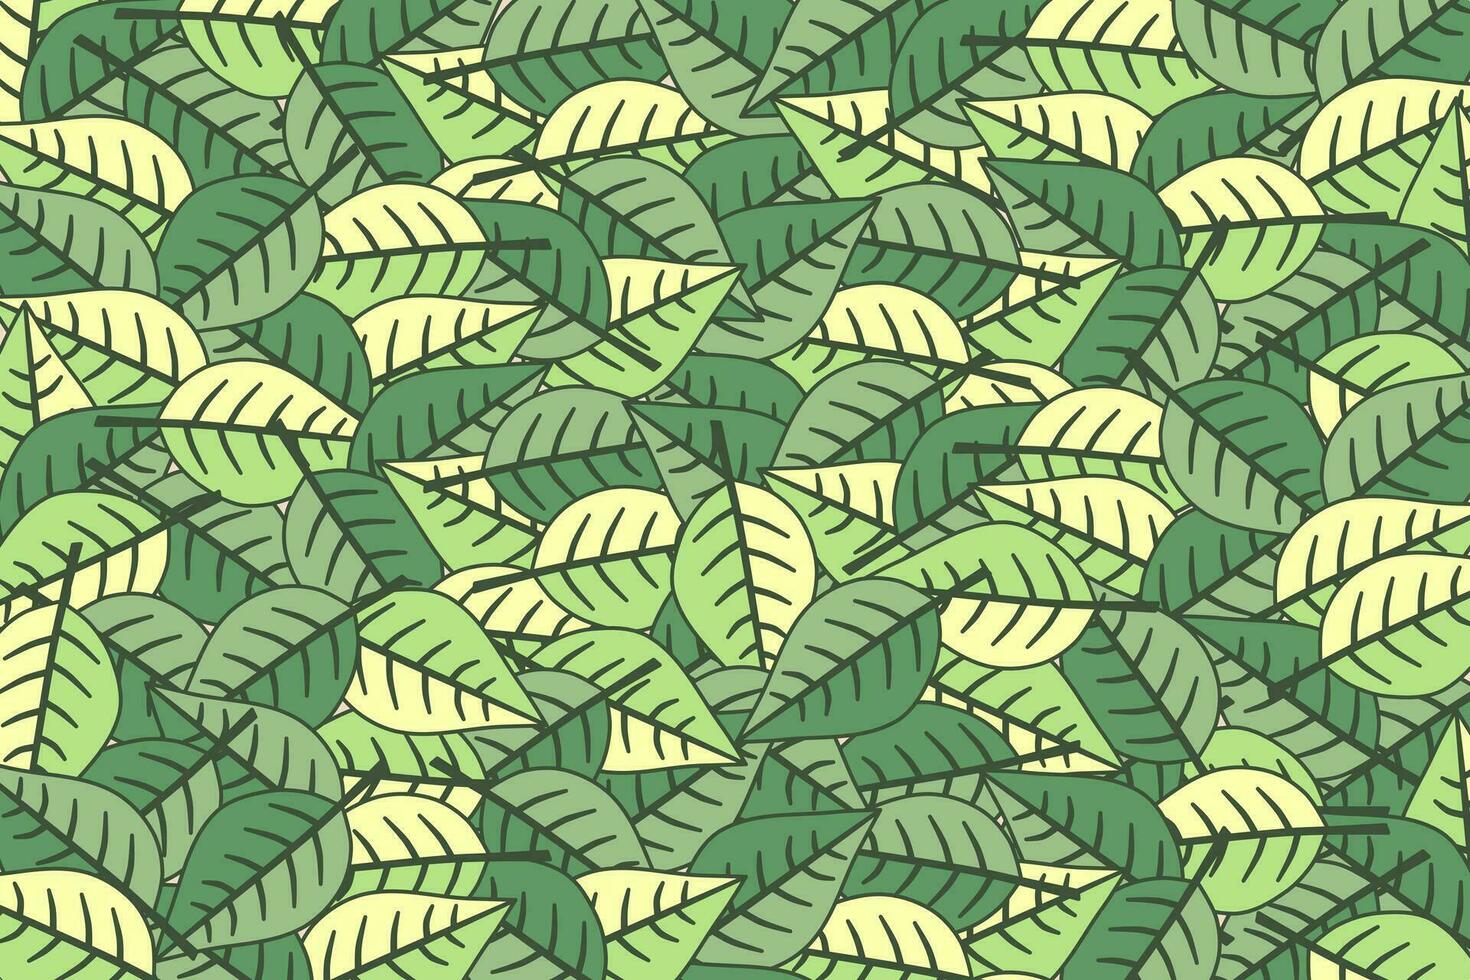 Tropical leaf wallpaper. Nature leaves pattern design. Vector illustration.